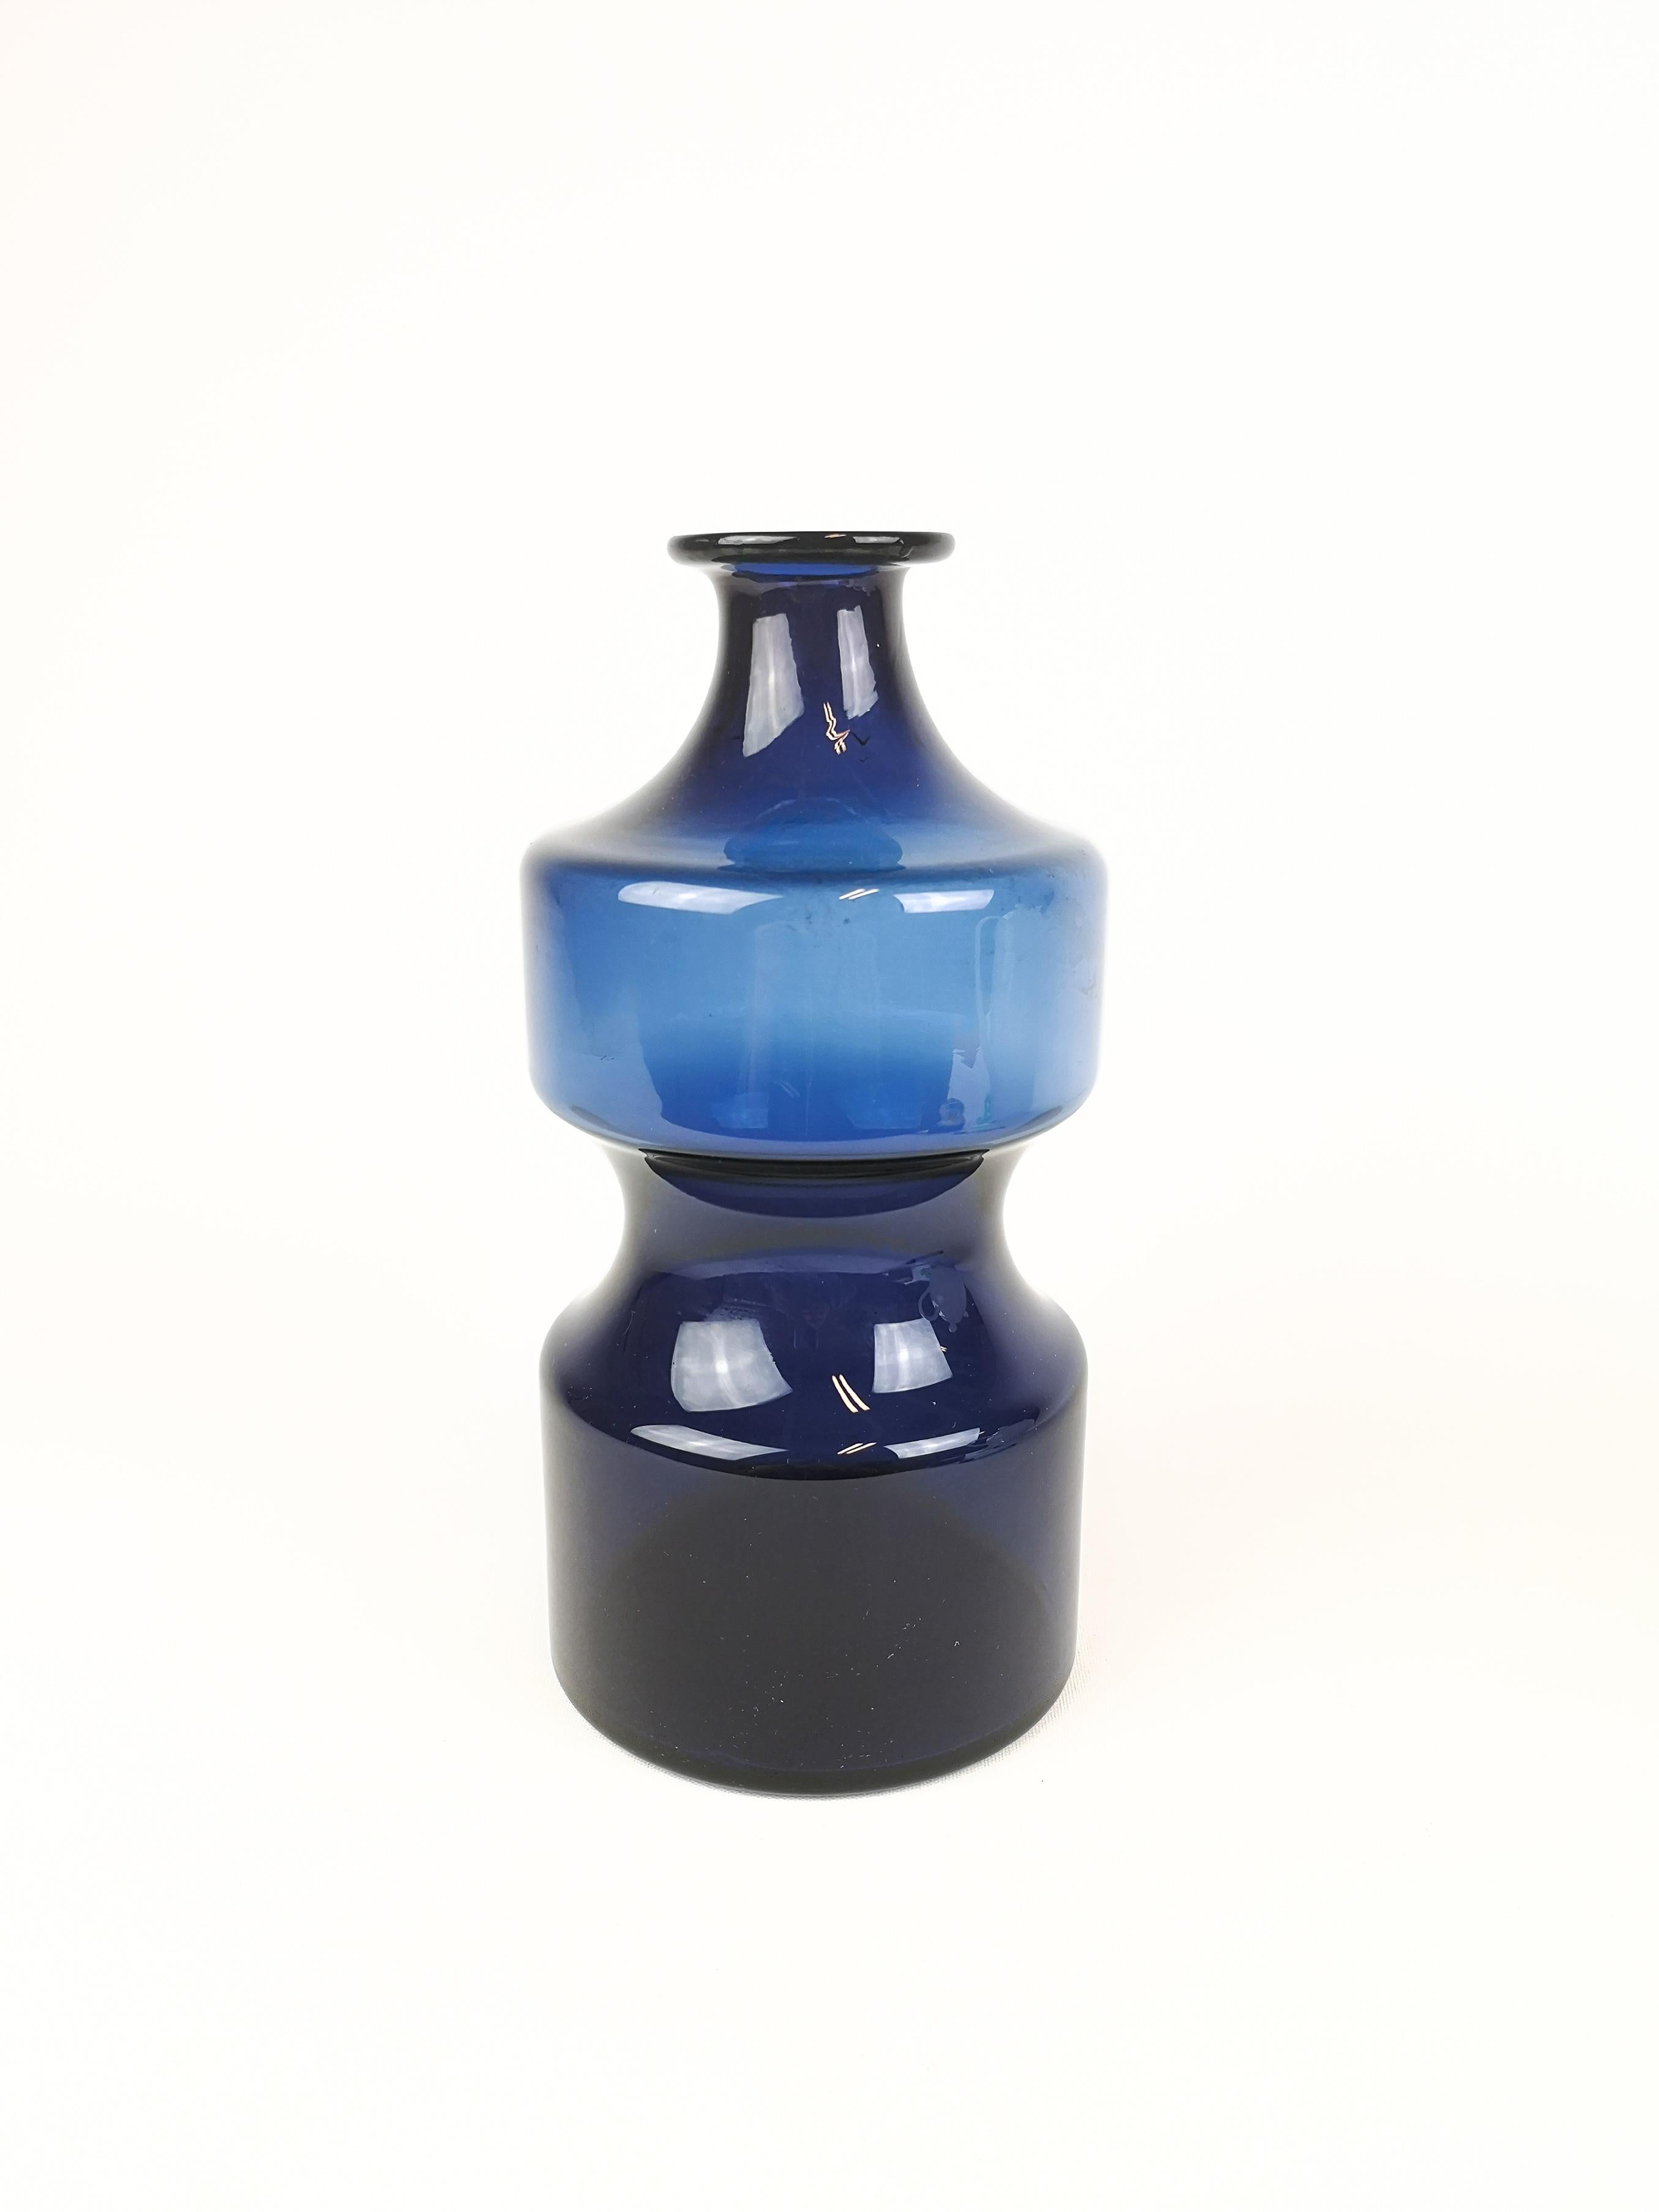 Eine großartig aussehende blaue Vase, die Timo Sarpaneva in den 1970er Jahren für Iittala entwarf. Gesungenes T.S. unter dem Boden.

Maße: H 25 cm, T 13 cm.
 